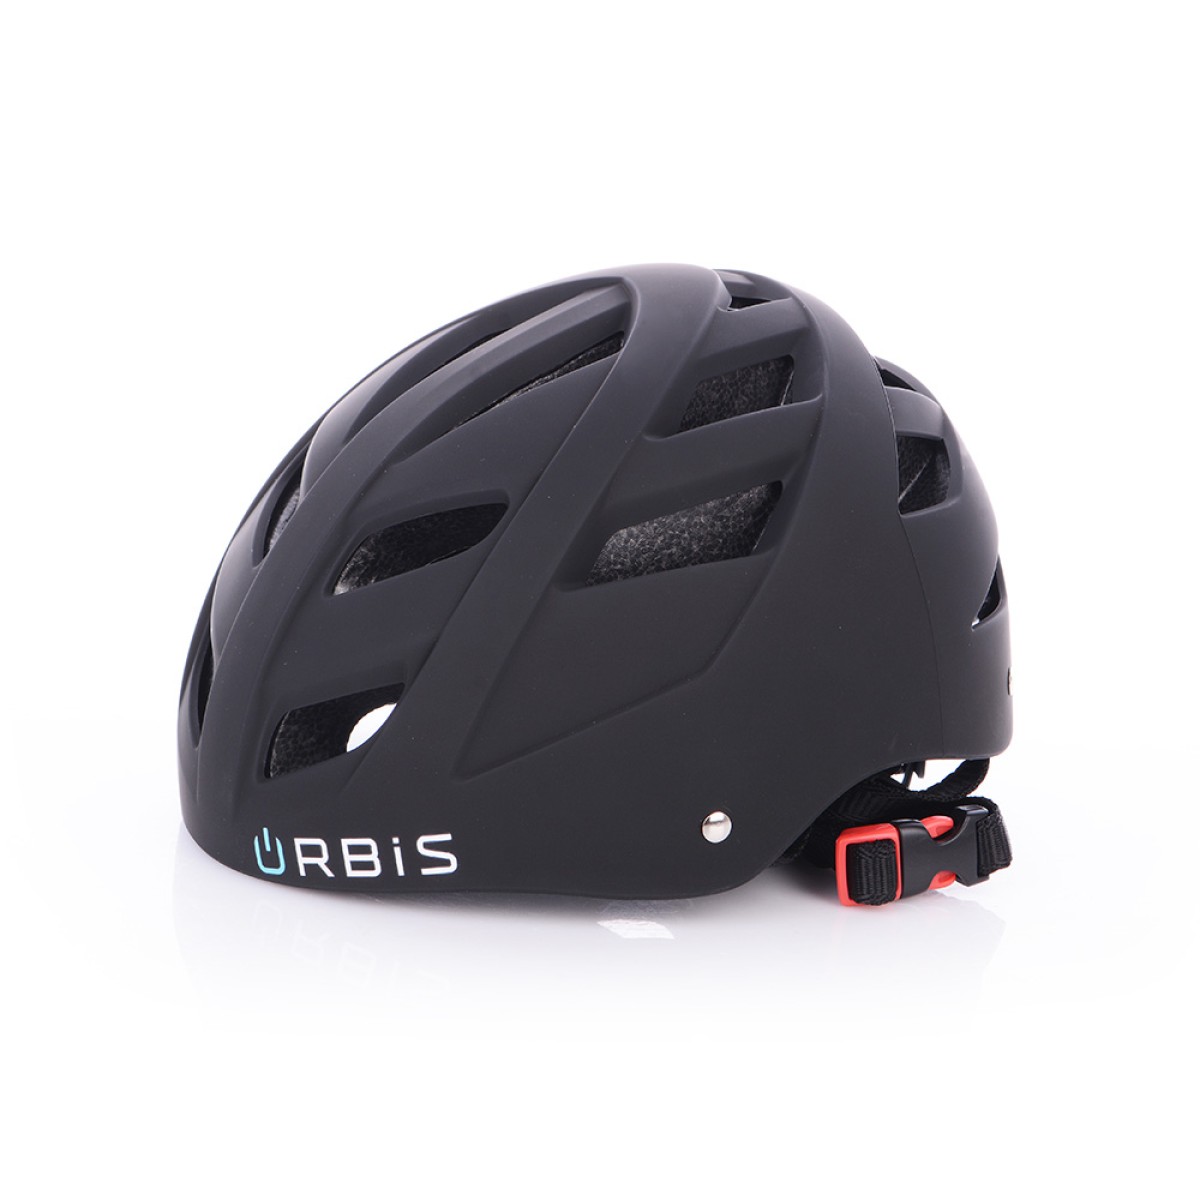 URBIS helmet for e-scooter black URBIS - view 1